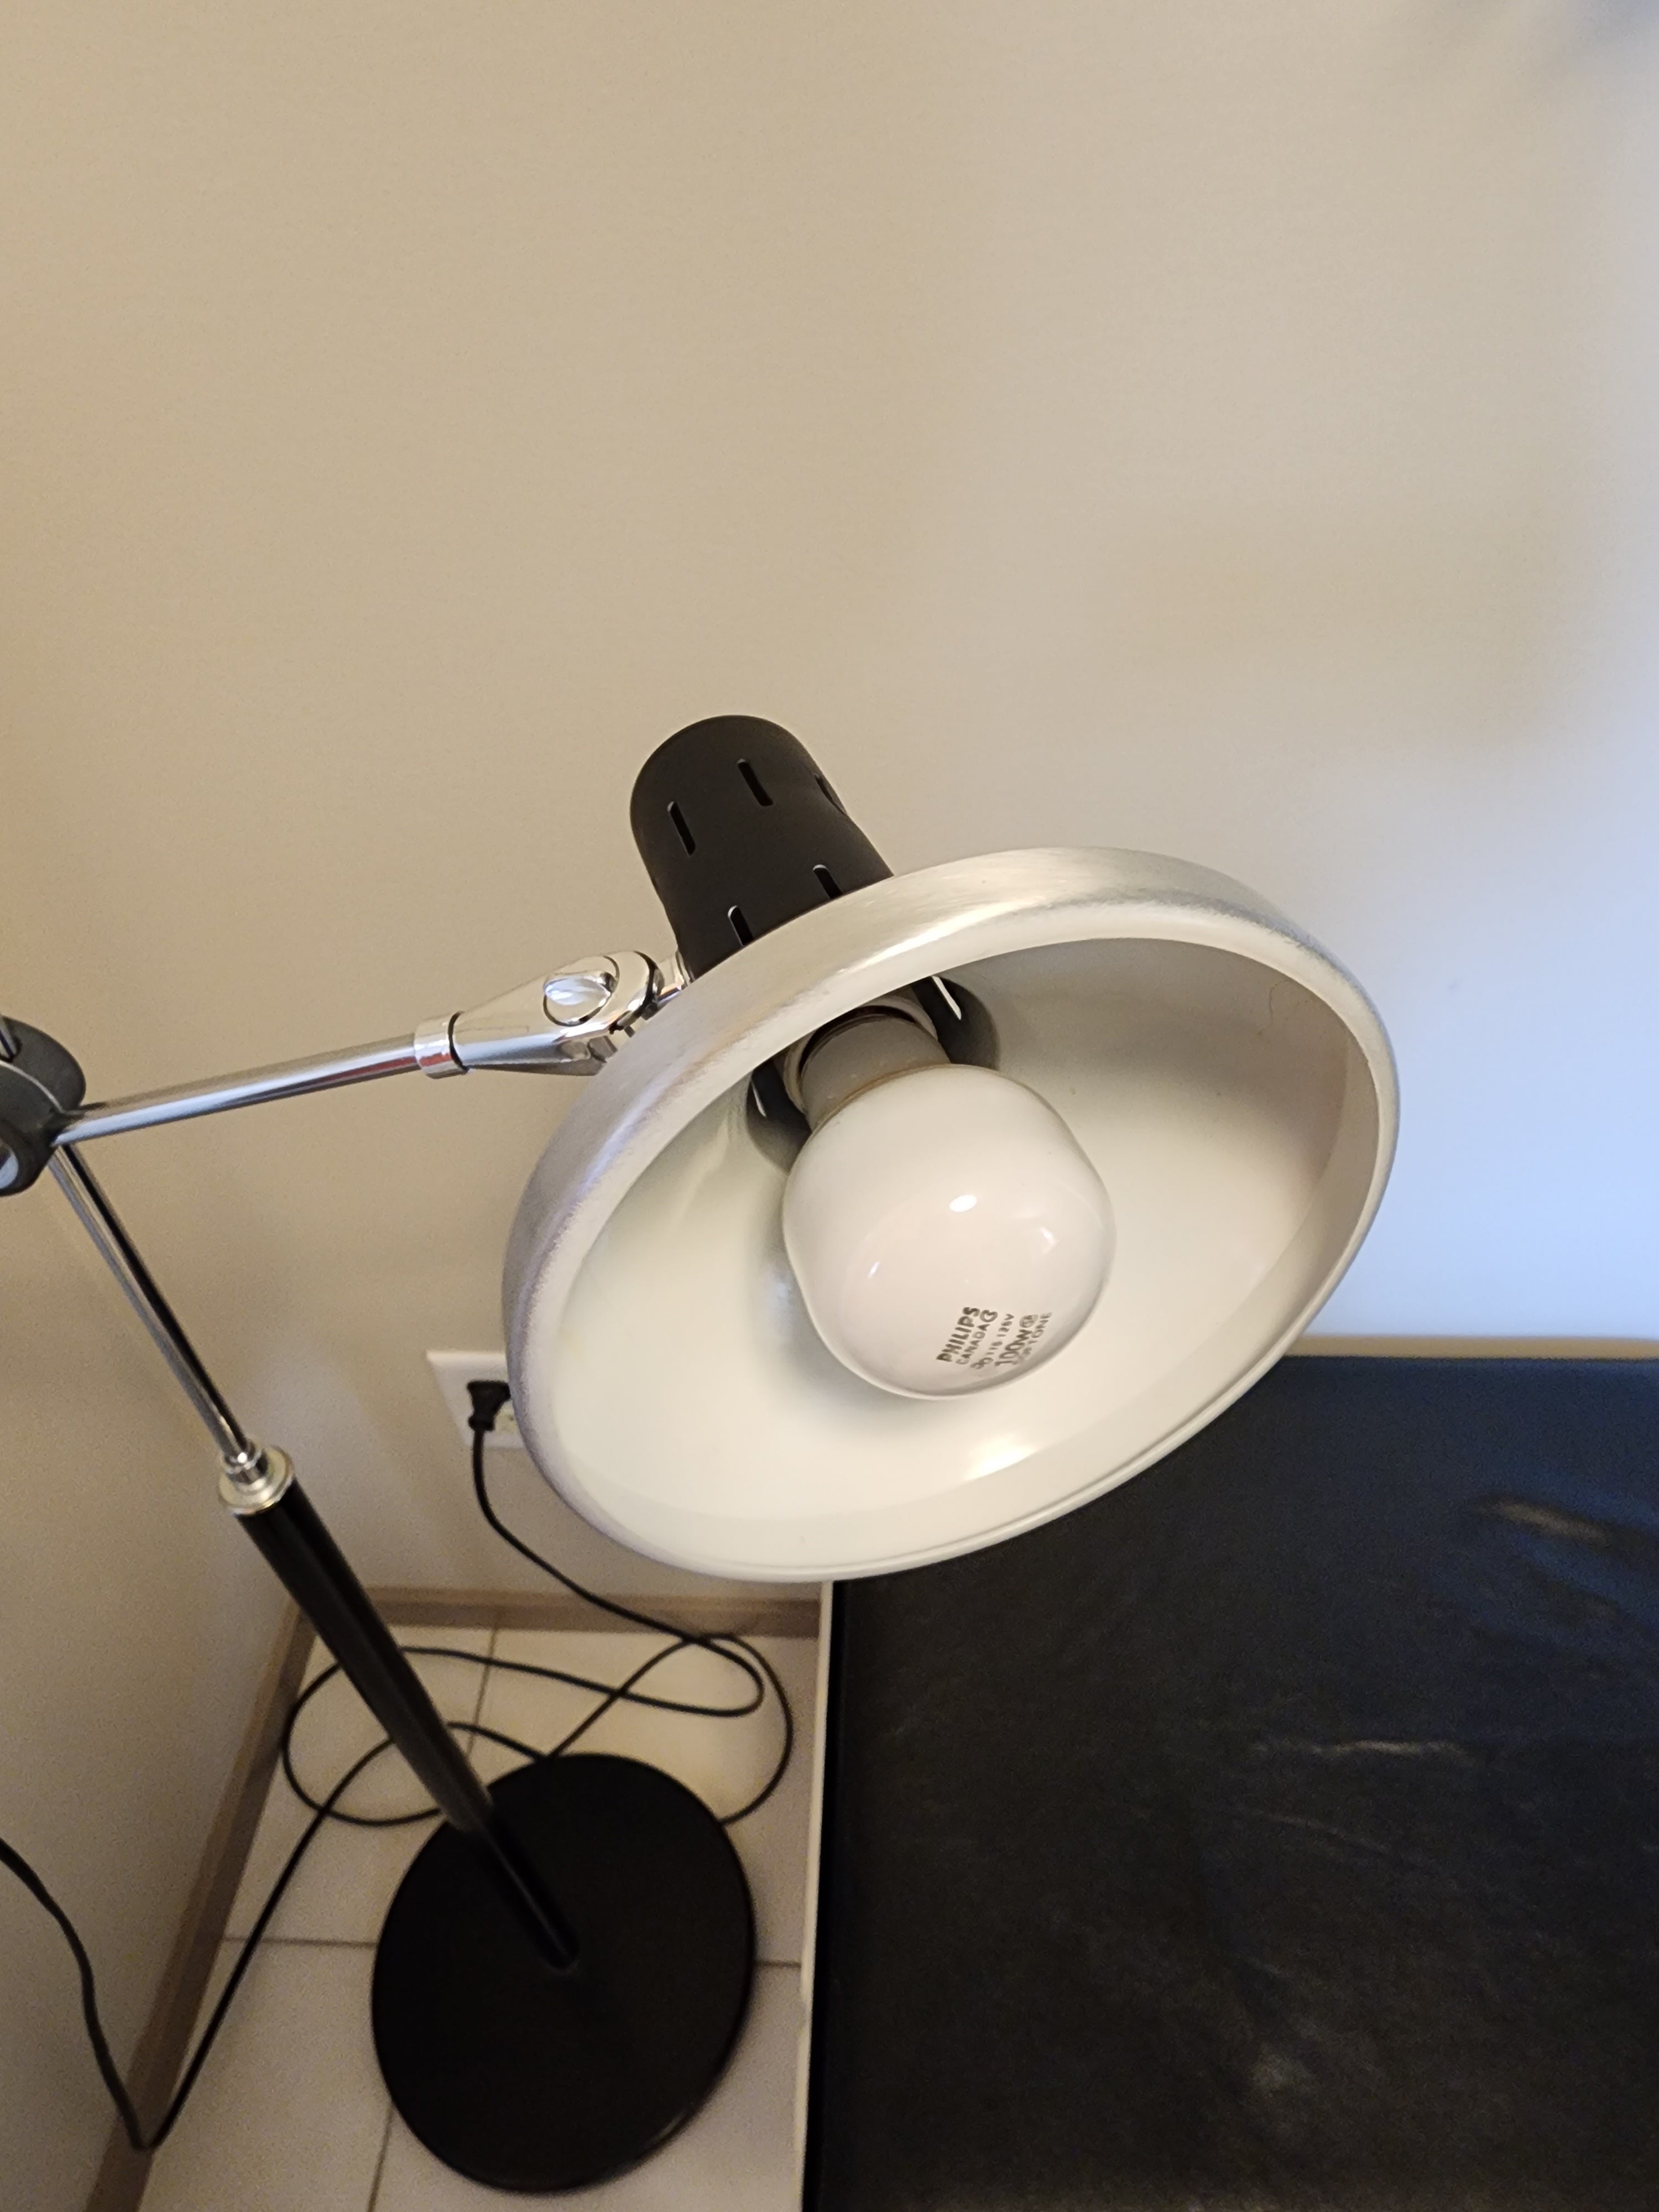 Retro Black & Aluminum Adjustable Floor Lamp